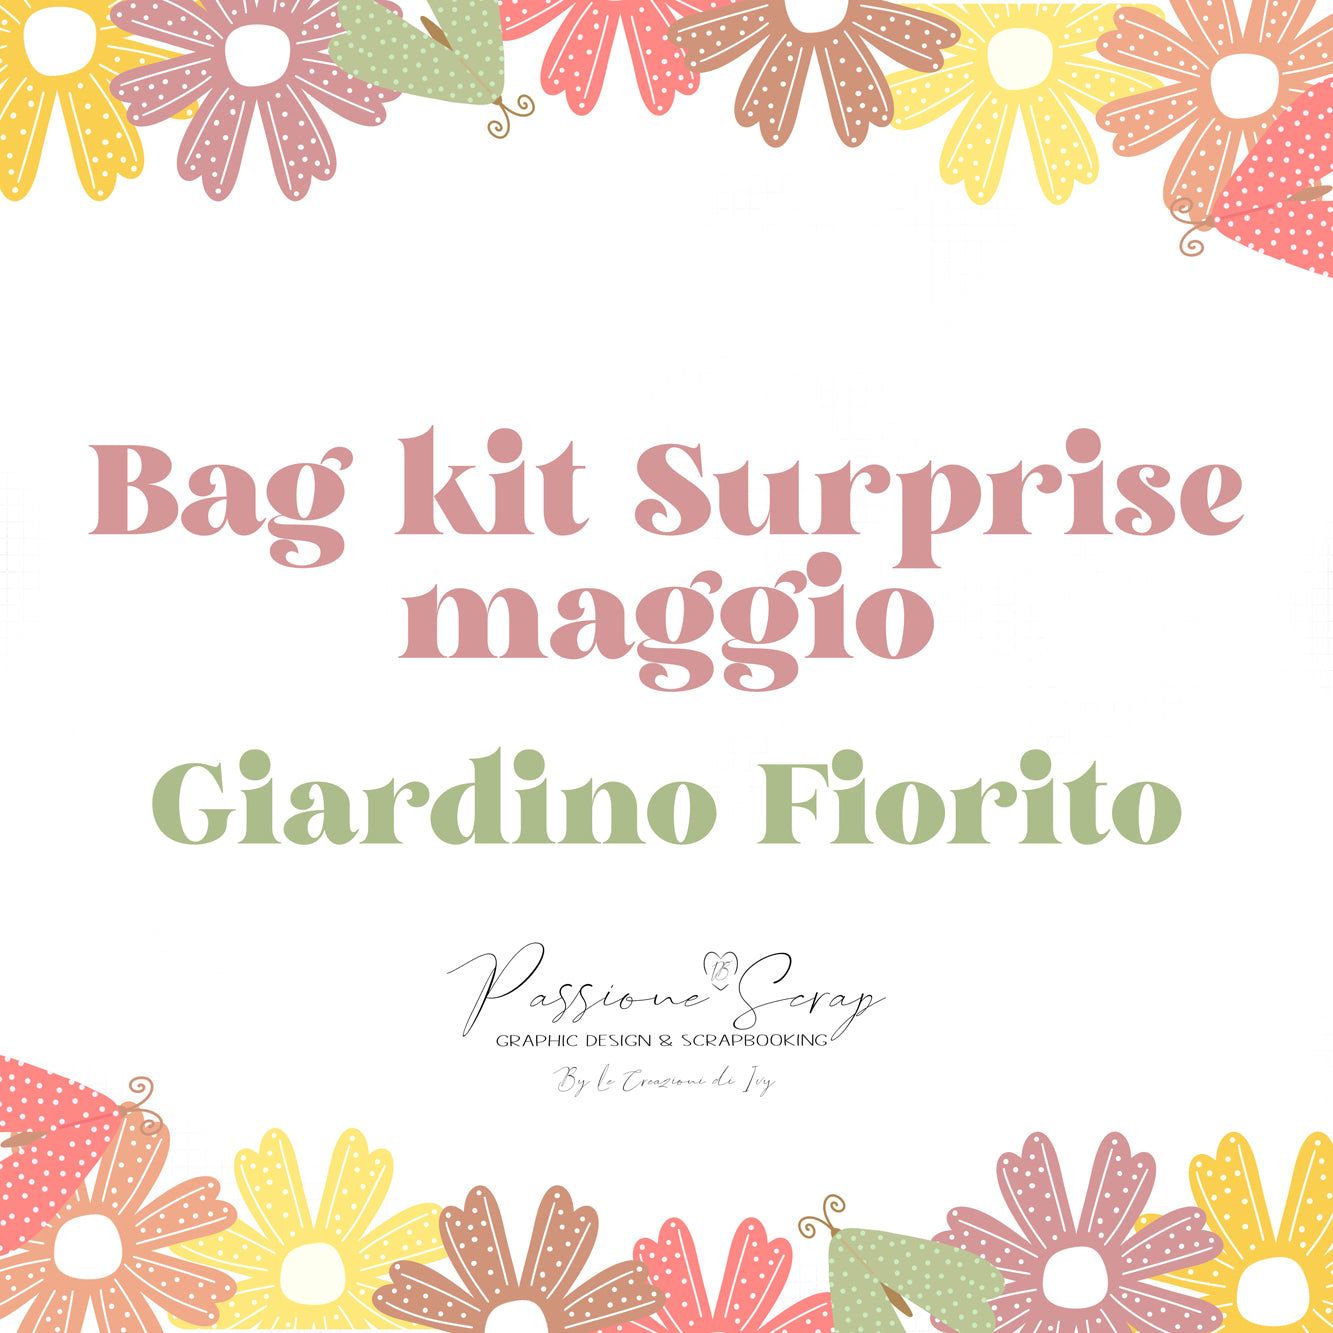 Bag kit Giardino Fiorito